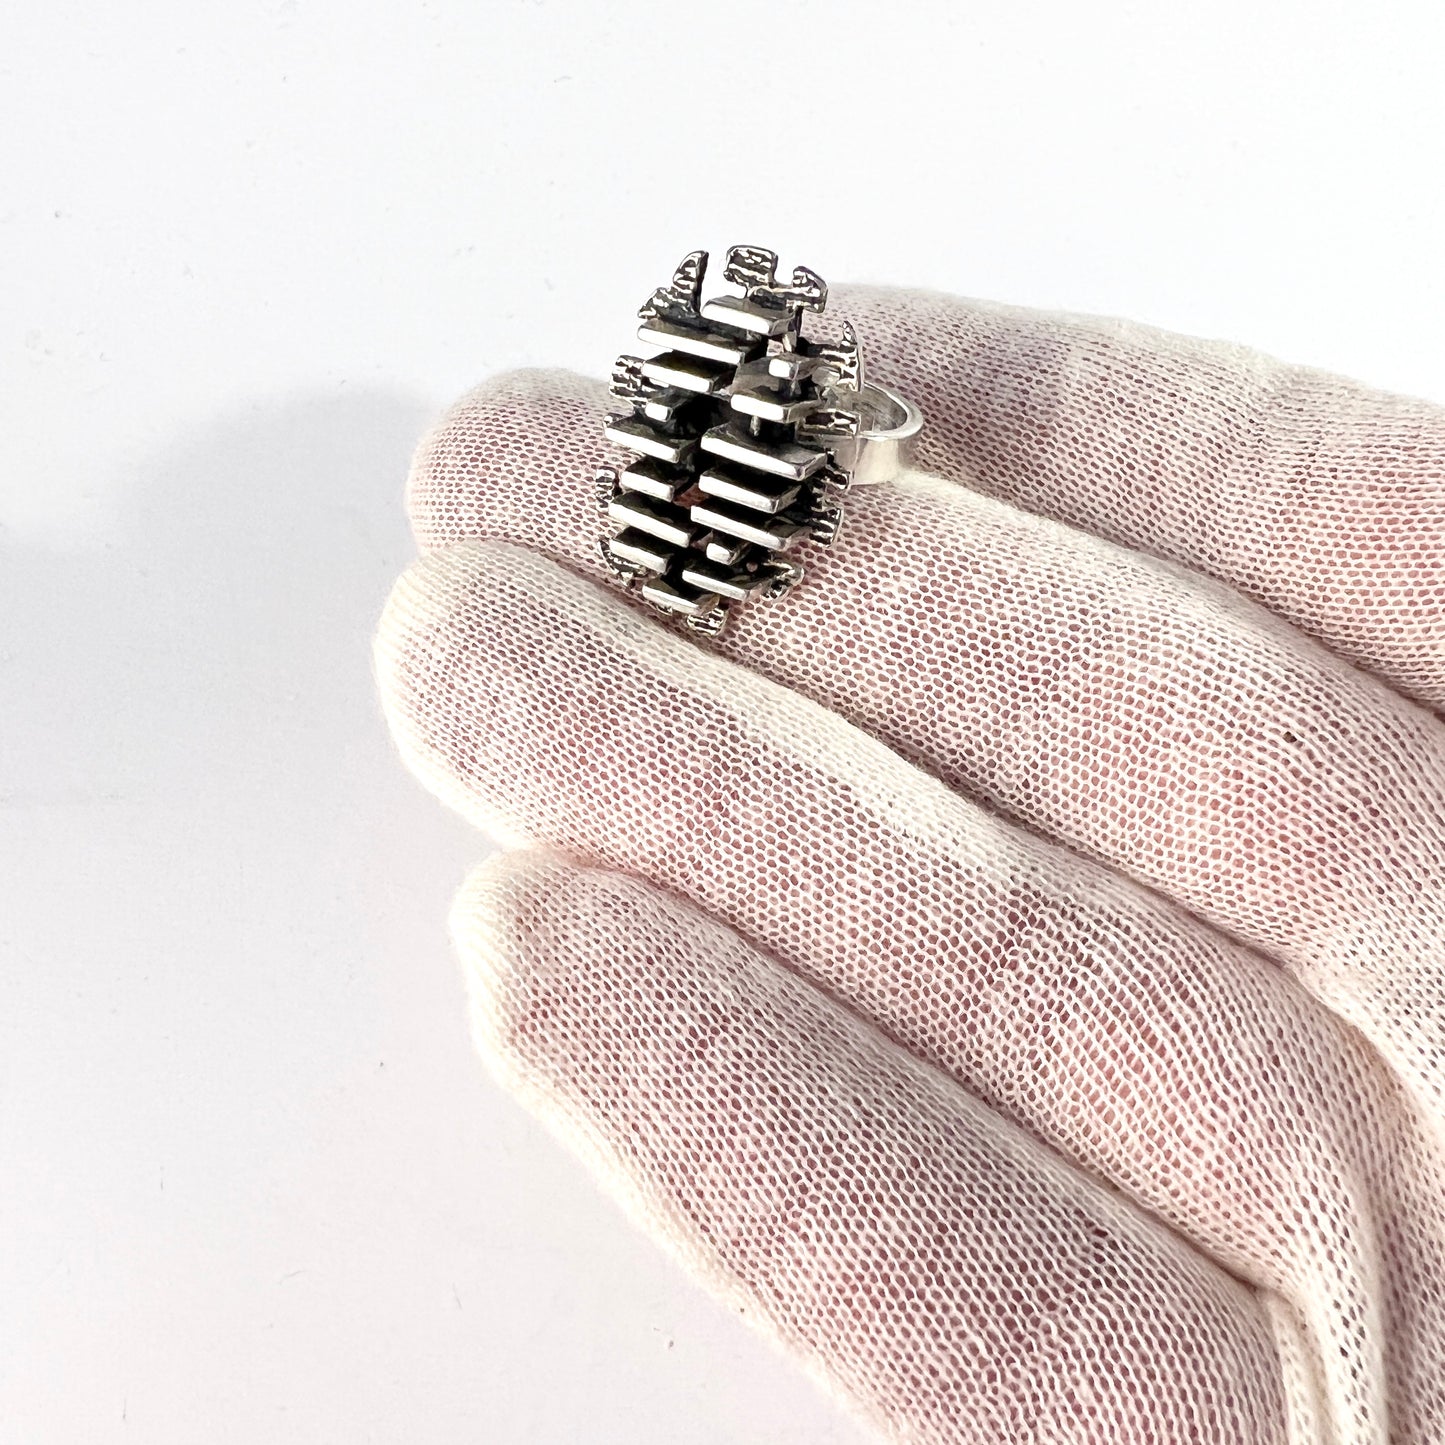 Israel 1970s. Vintage Modernist Sterling Silver Ring. Makers Mark.